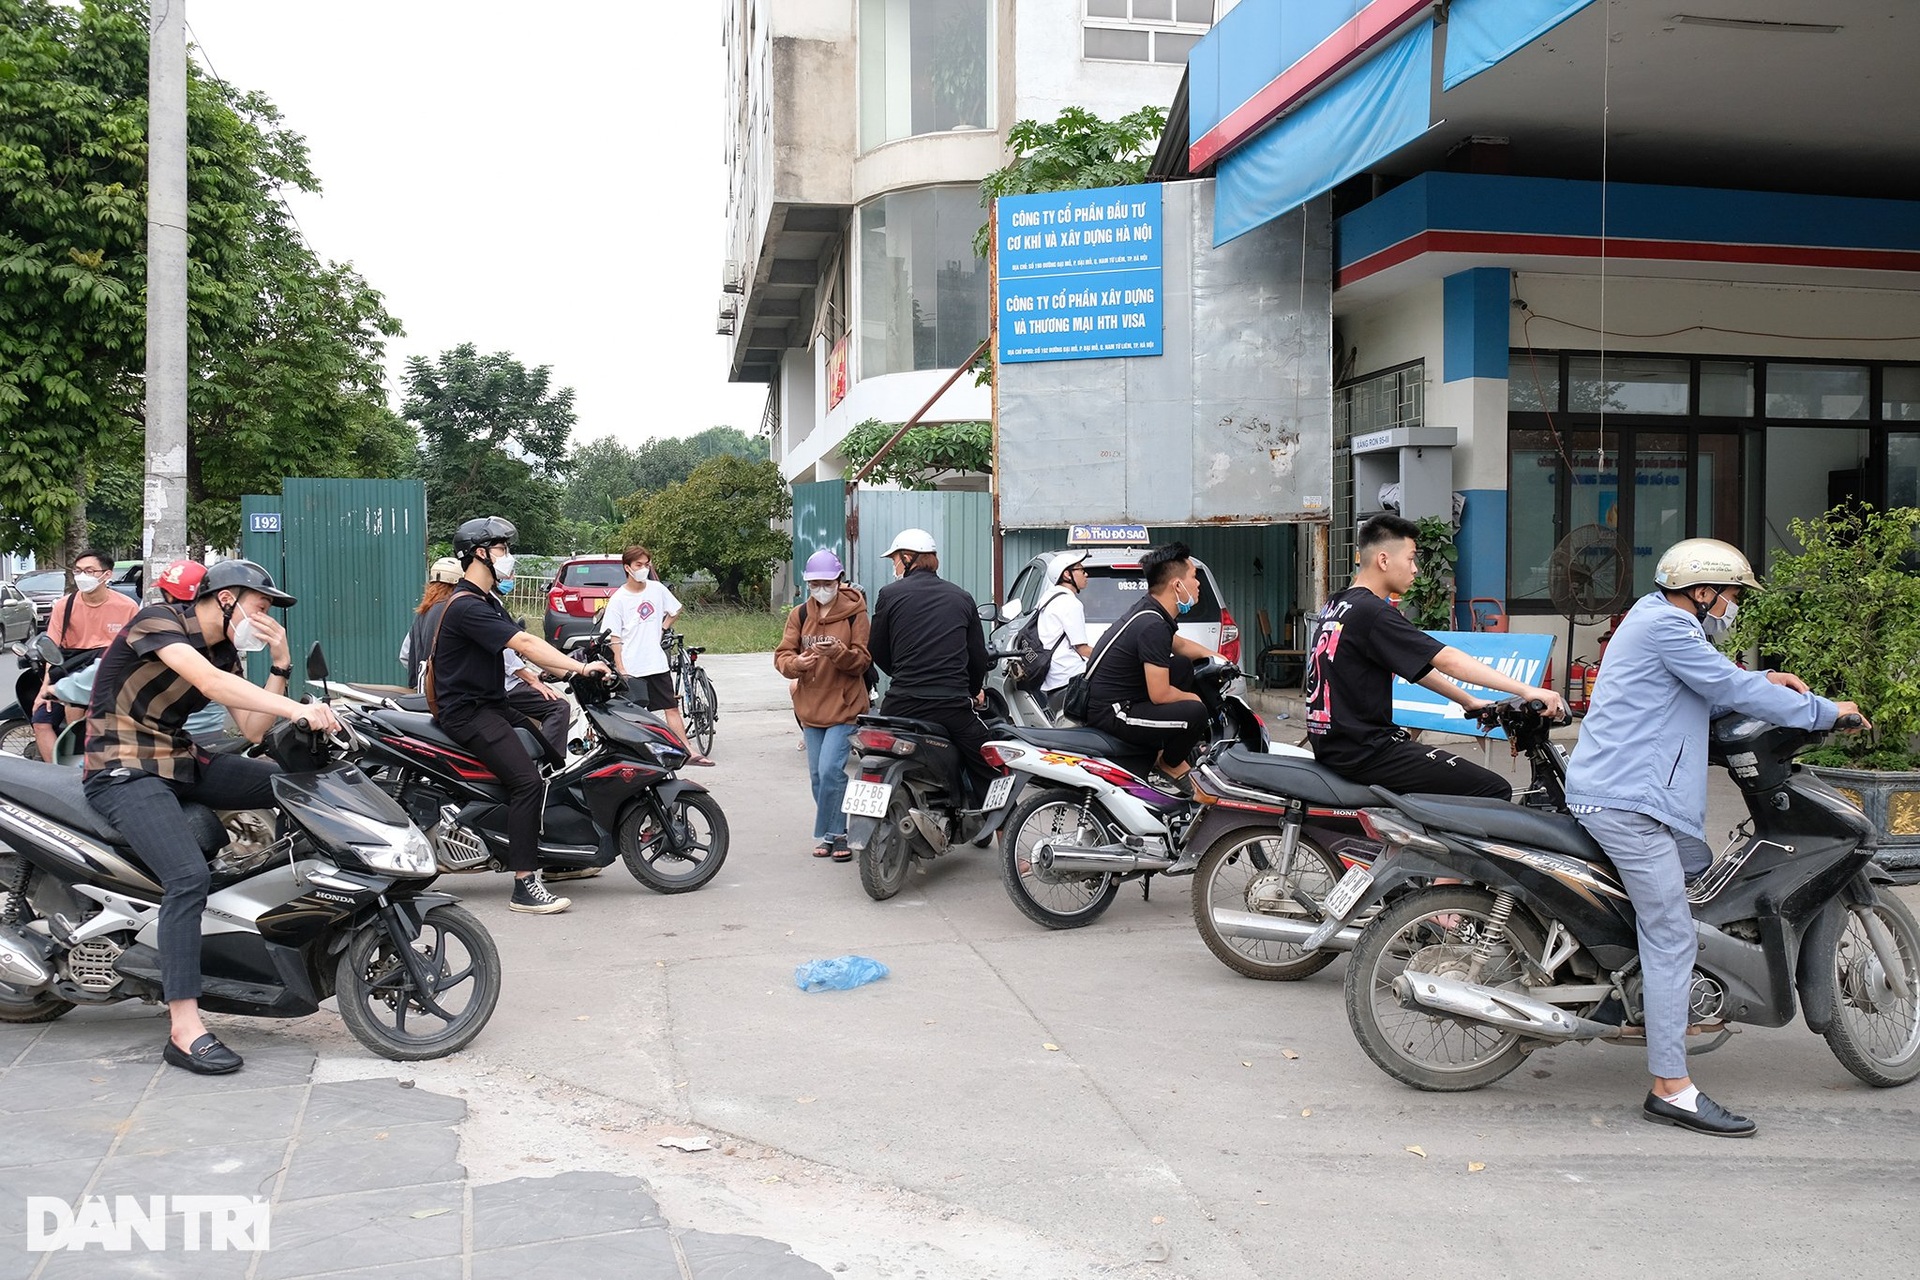 Mặc kệ giá xăng tăng, nhiều cây xăng ở Hà Nội vẫn đóng cửa im lìm - 6